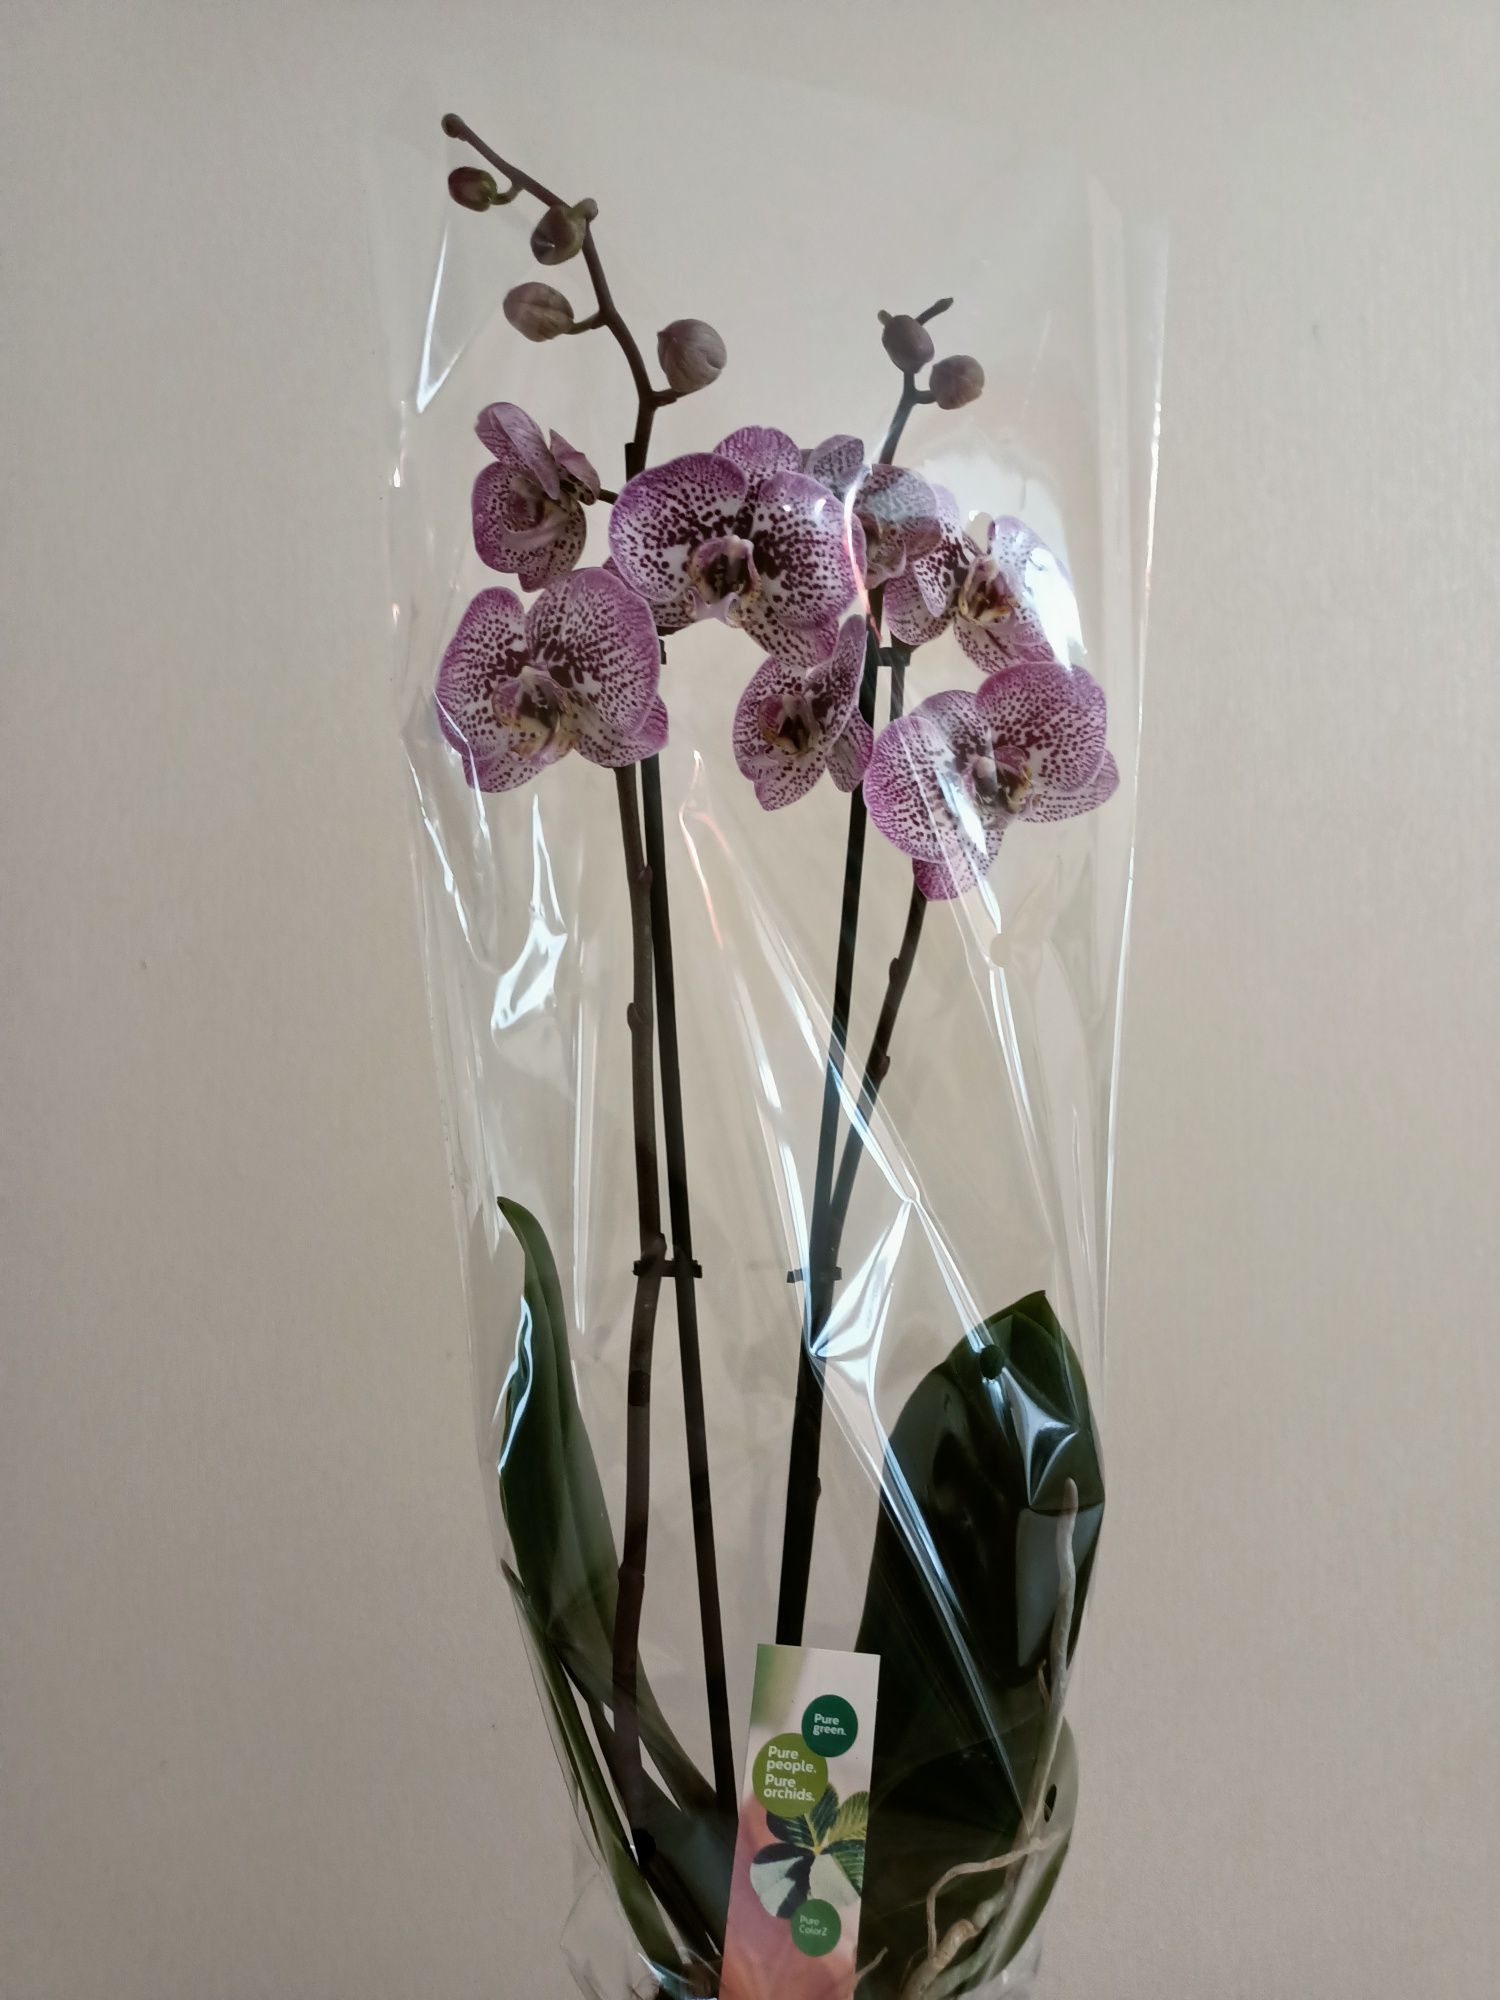 Королевские орхидеи